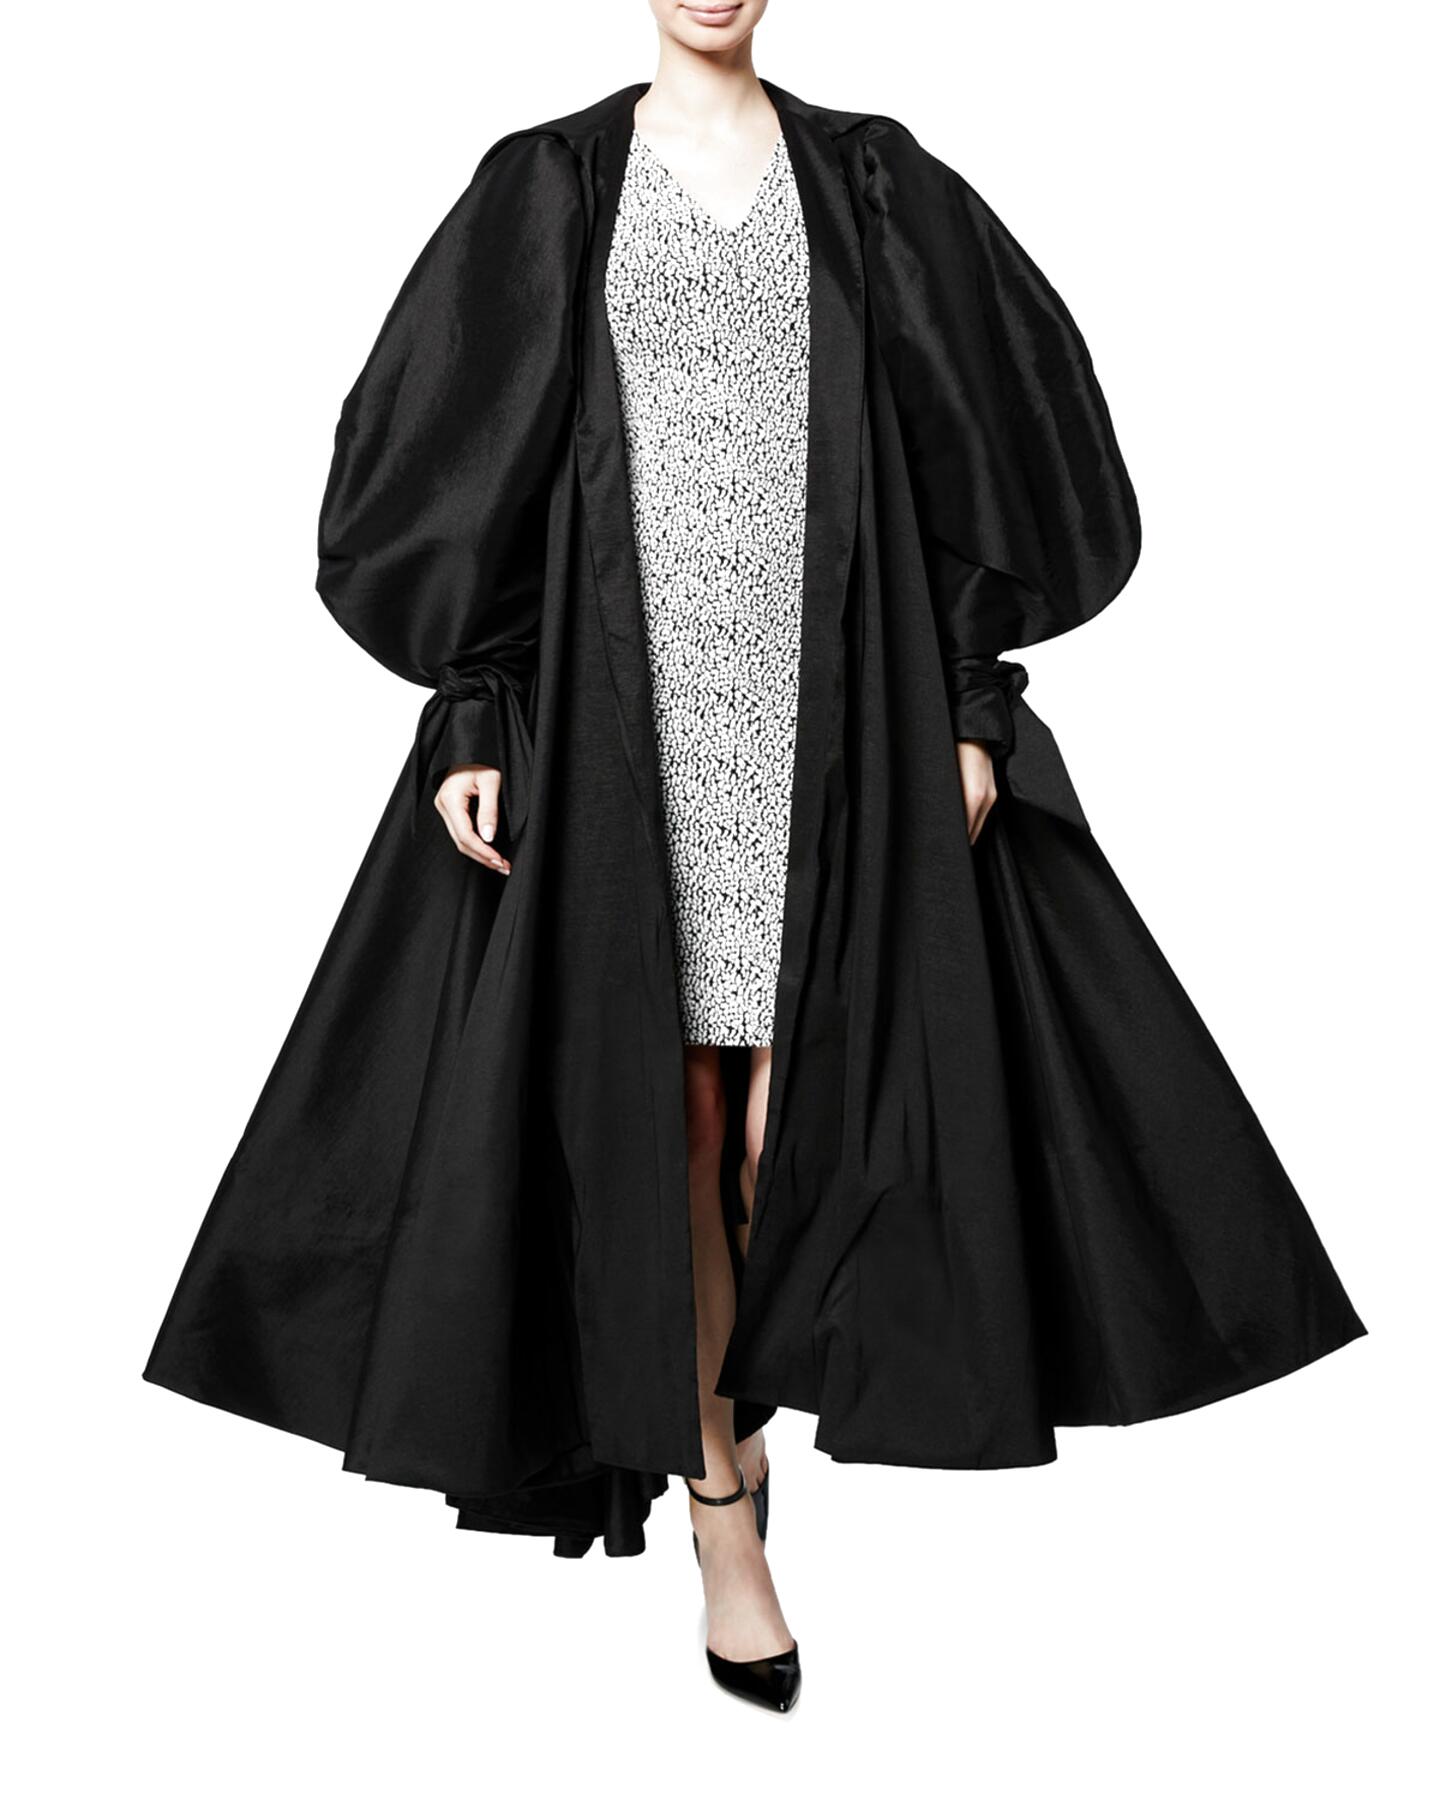 1822 UK Elegant Lightweight Evening Overcoat 1980s Black Opera Coat with Marabou Feather Trim Size 1416 US